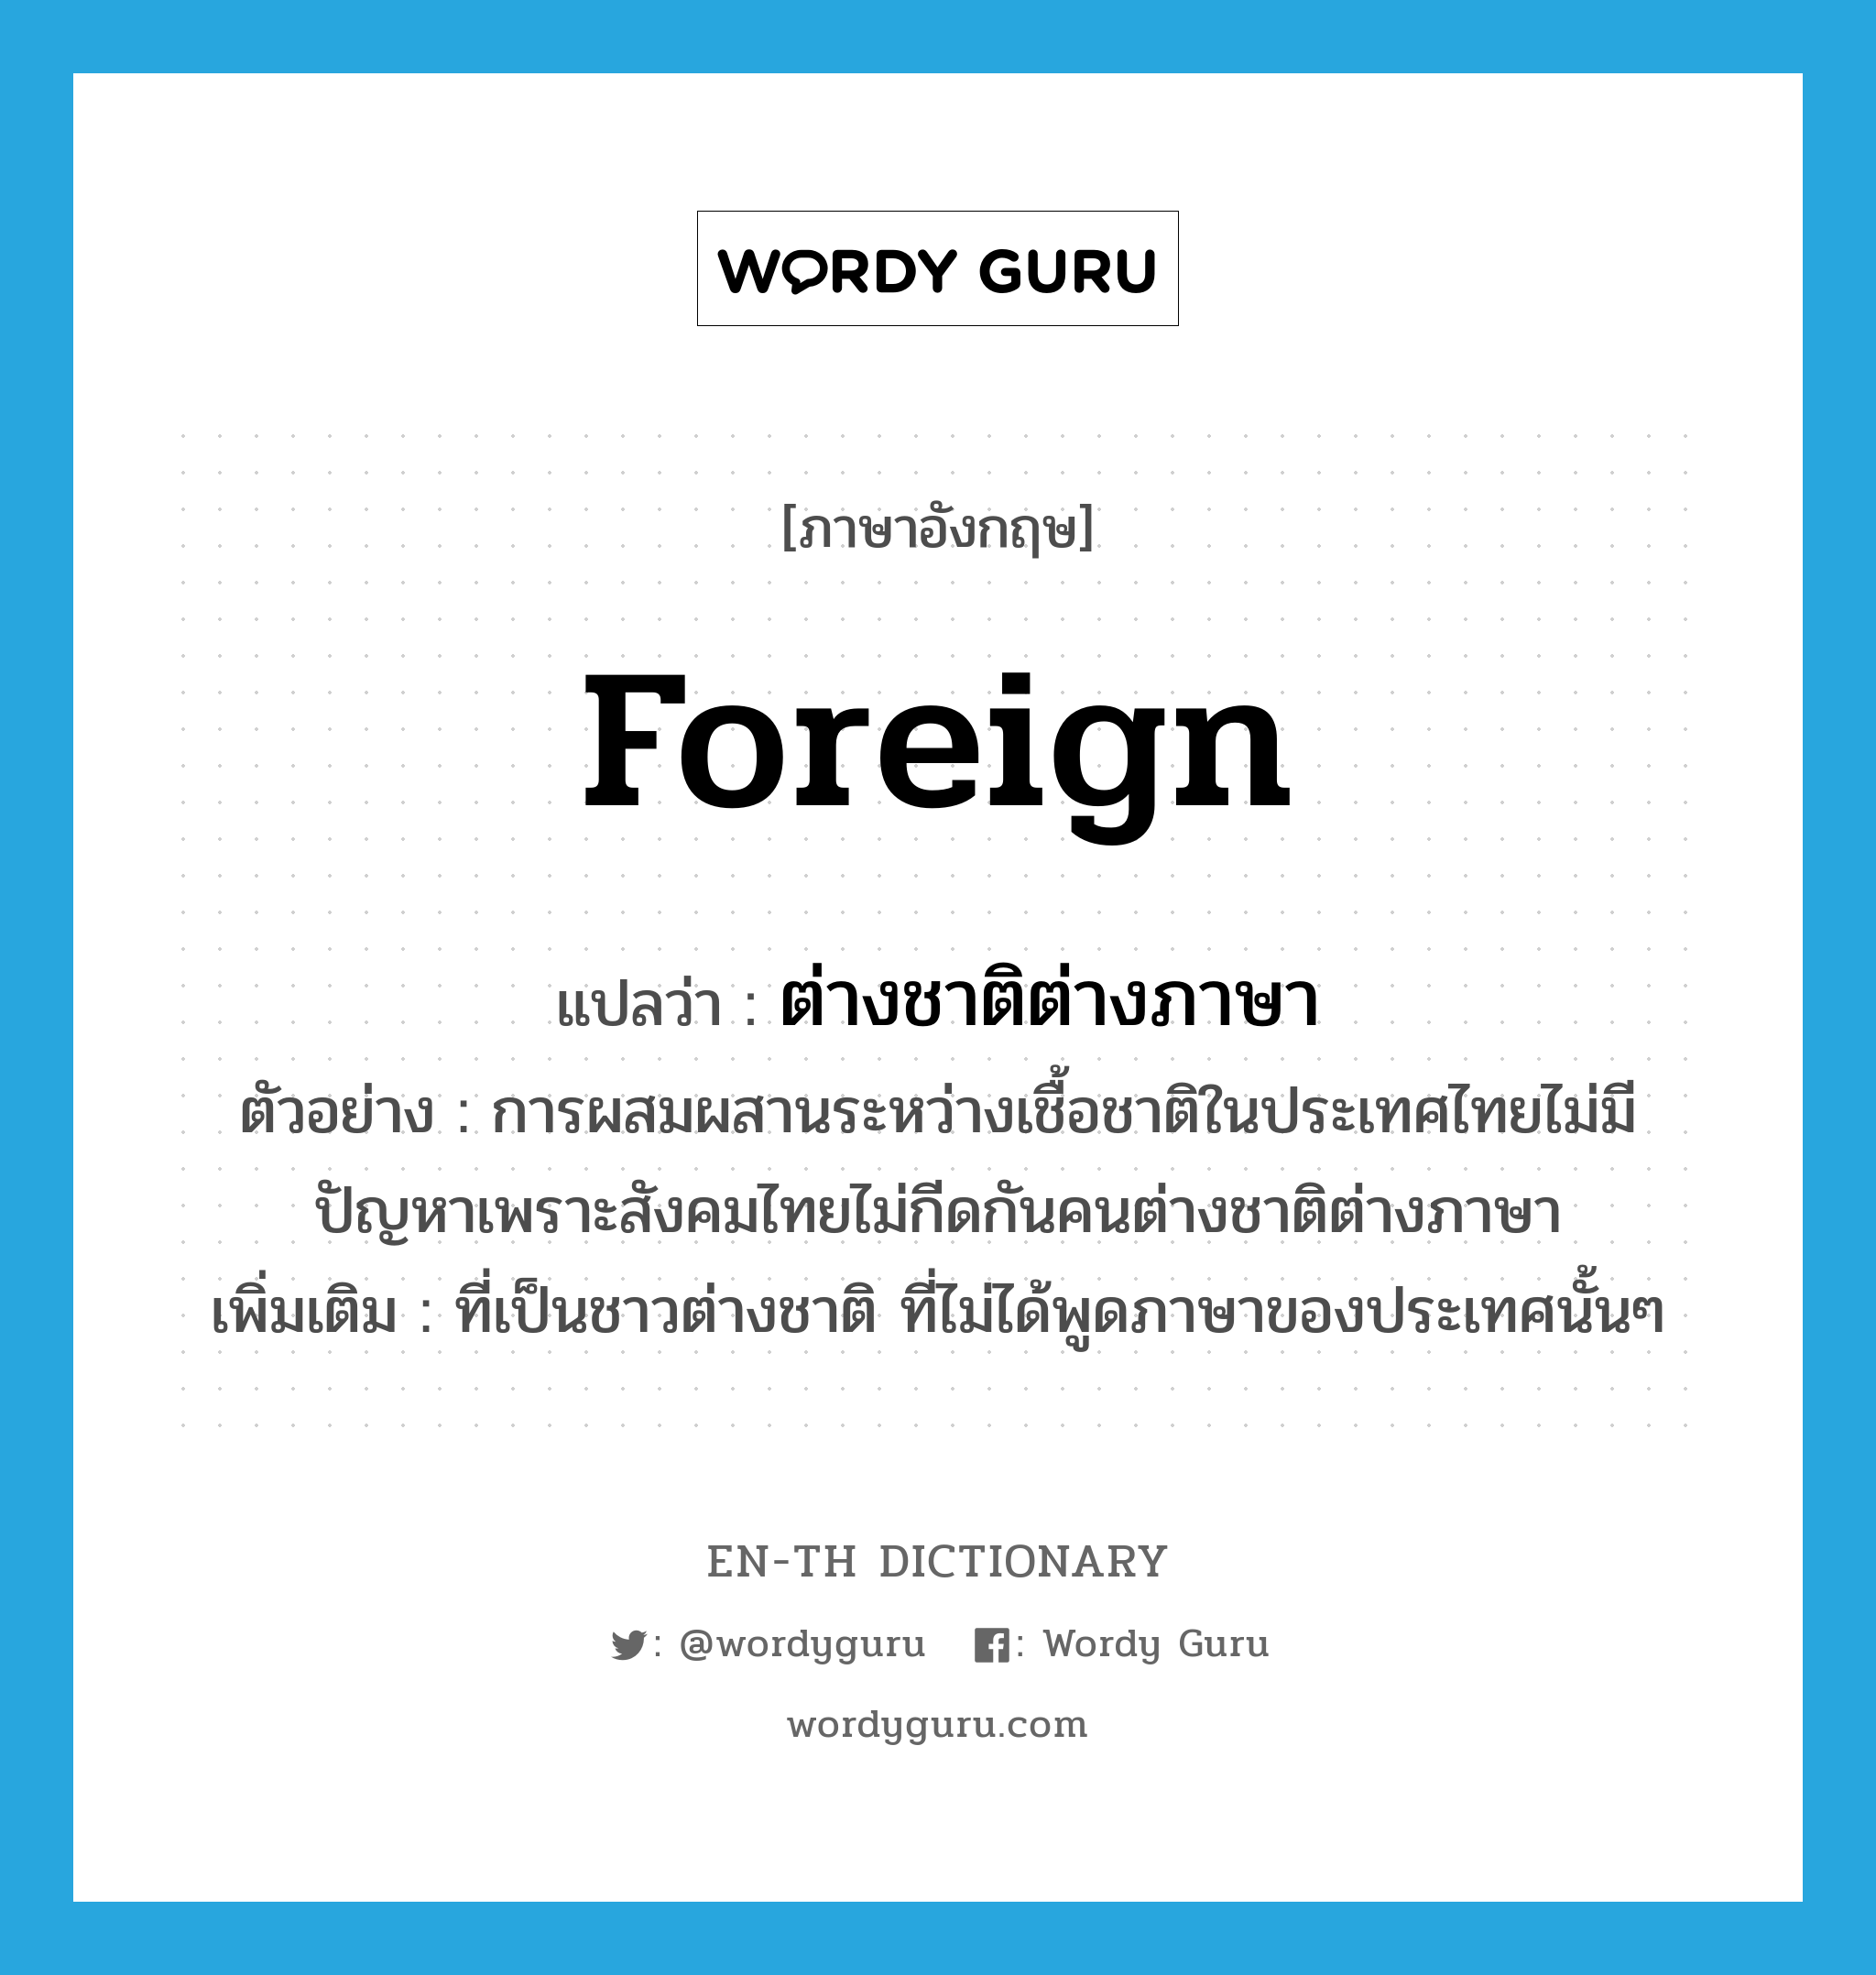 ต่างชาติต่างภาษา ภาษาอังกฤษ?, คำศัพท์ภาษาอังกฤษ ต่างชาติต่างภาษา แปลว่า foreign ประเภท ADJ ตัวอย่าง การผสมผสานระหว่างเชื้อชาติในประเทศไทยไม่มีปัญหาเพราะสังคมไทยไม่กีดกันคนต่างชาติต่างภาษา เพิ่มเติม ที่เป็นชาวต่างชาติ ที่ไม่ได้พูดภาษาของประเทศนั้นๆ หมวด ADJ